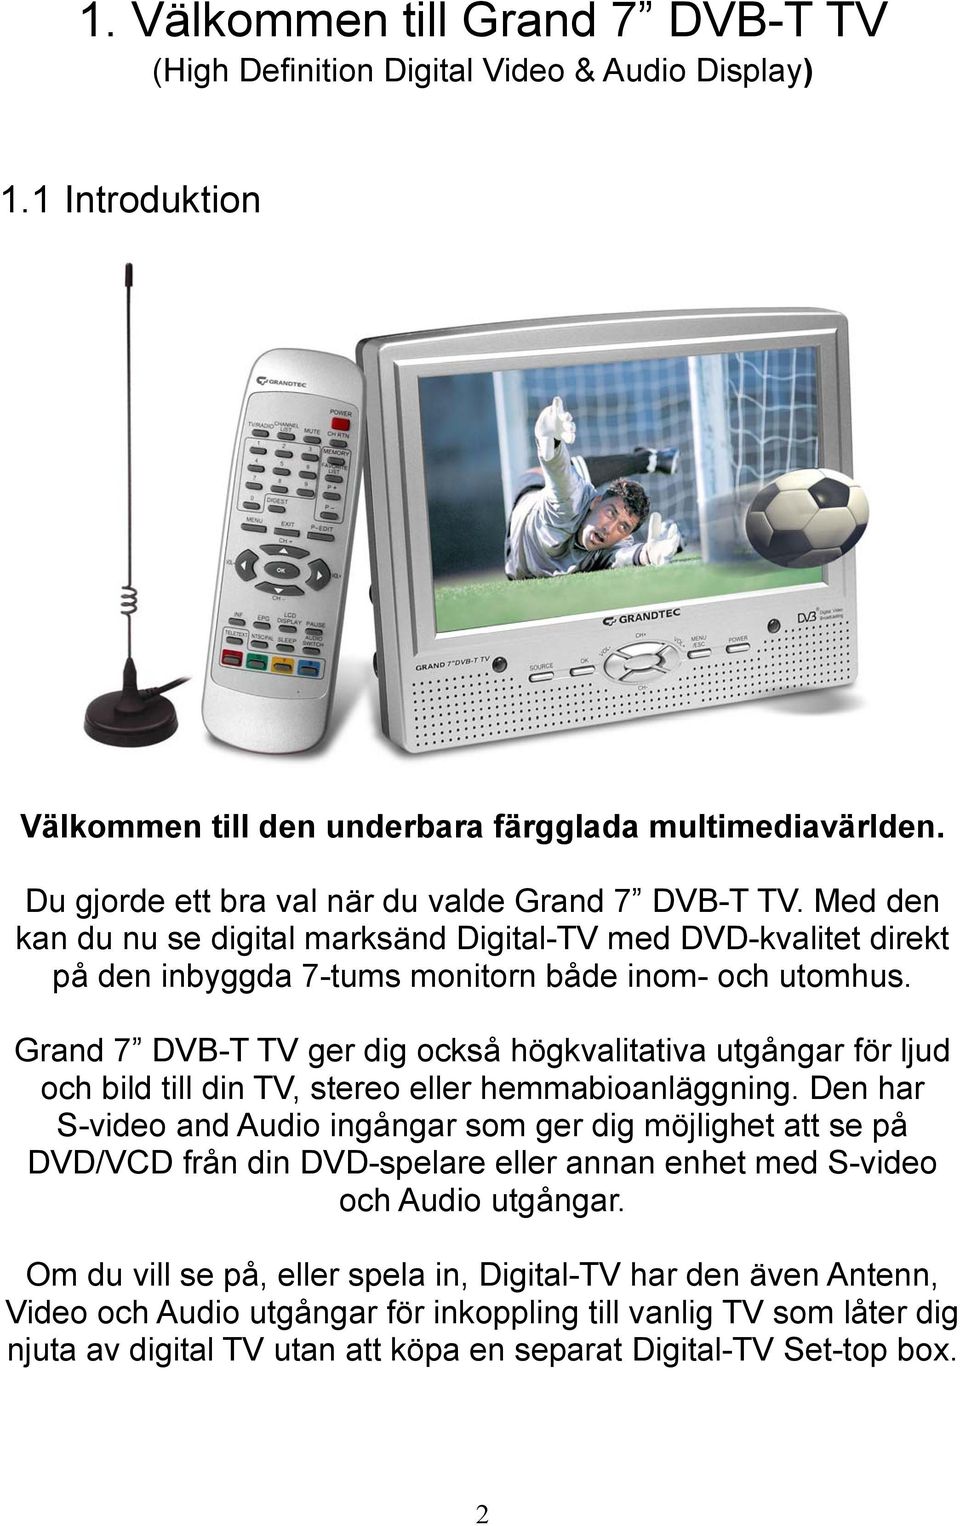 Grand 7 DVB-T TV ger dig också högkvalitativa utgångar för ljud och bild till din TV, stereo eller hemmabioanläggning.